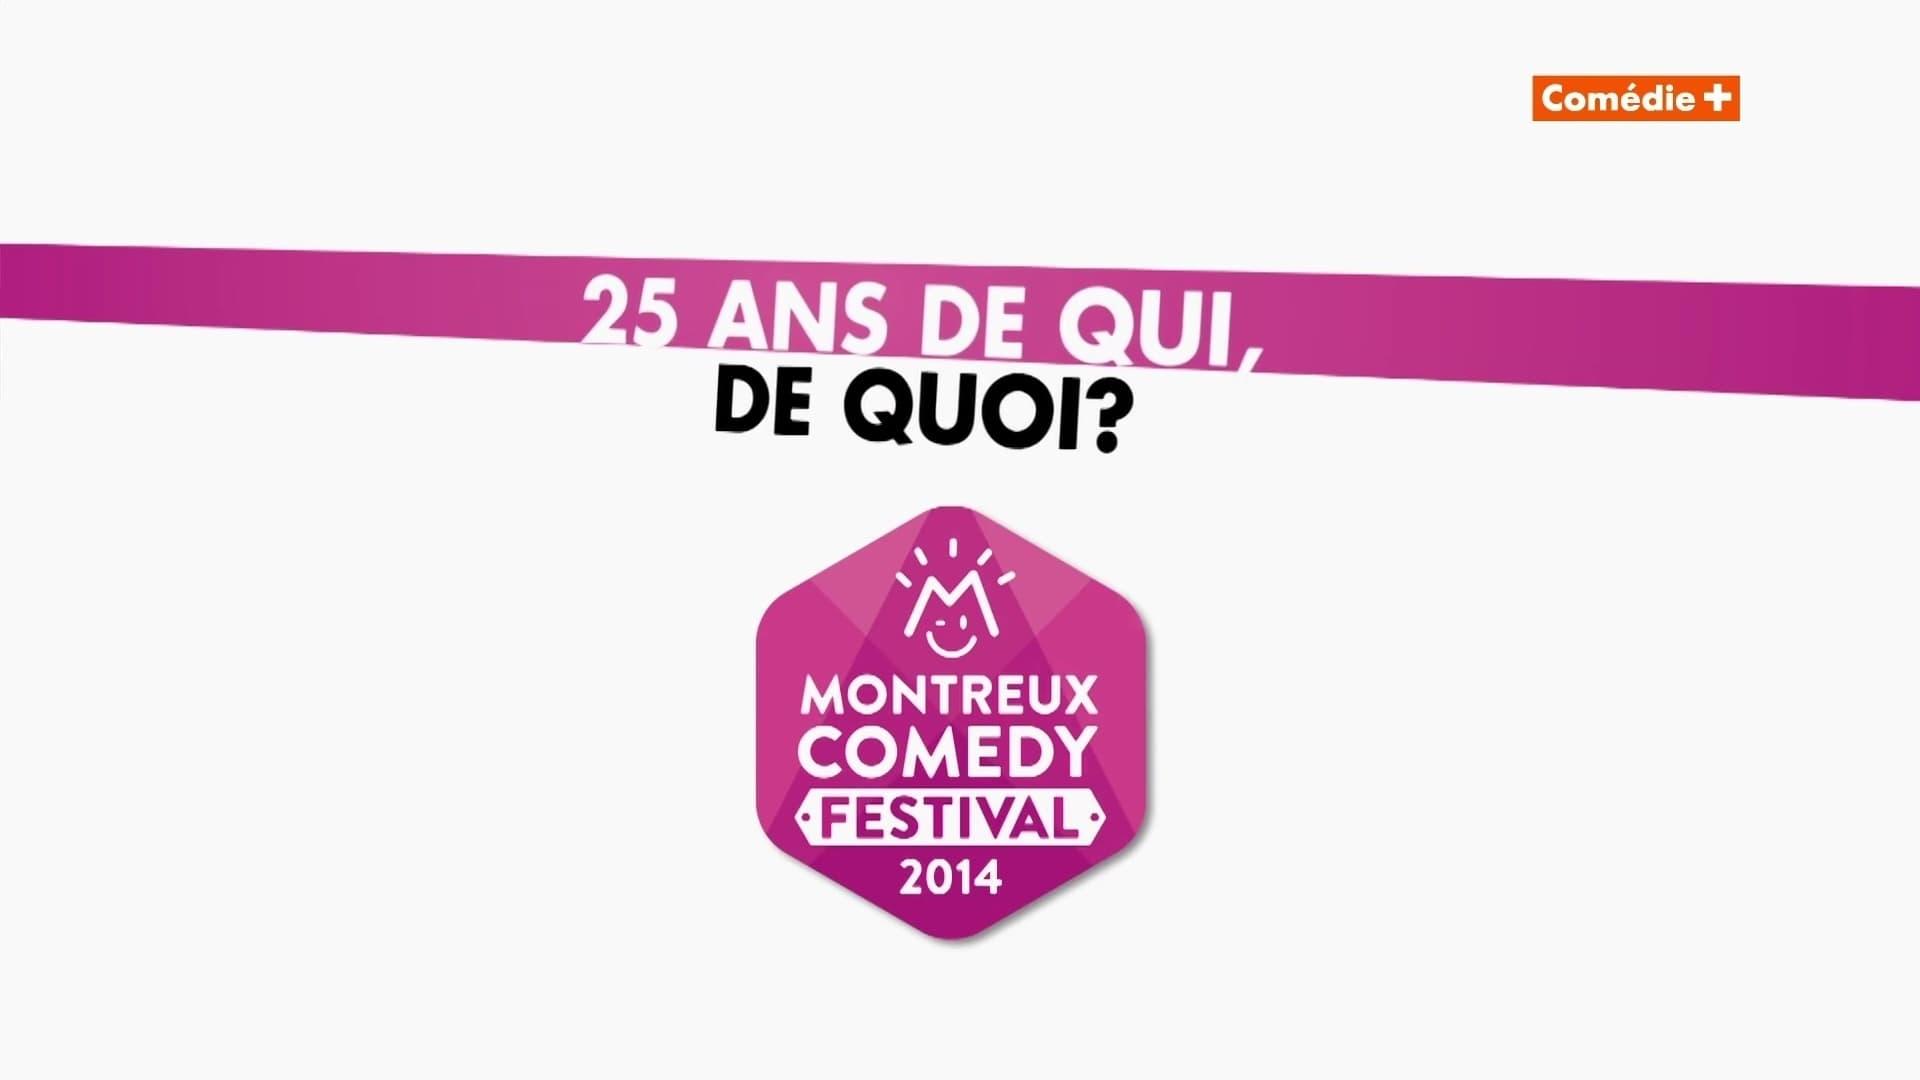 Montreux Comedy Festival 2014 - 25 ans de qui, de quoi ? backdrop